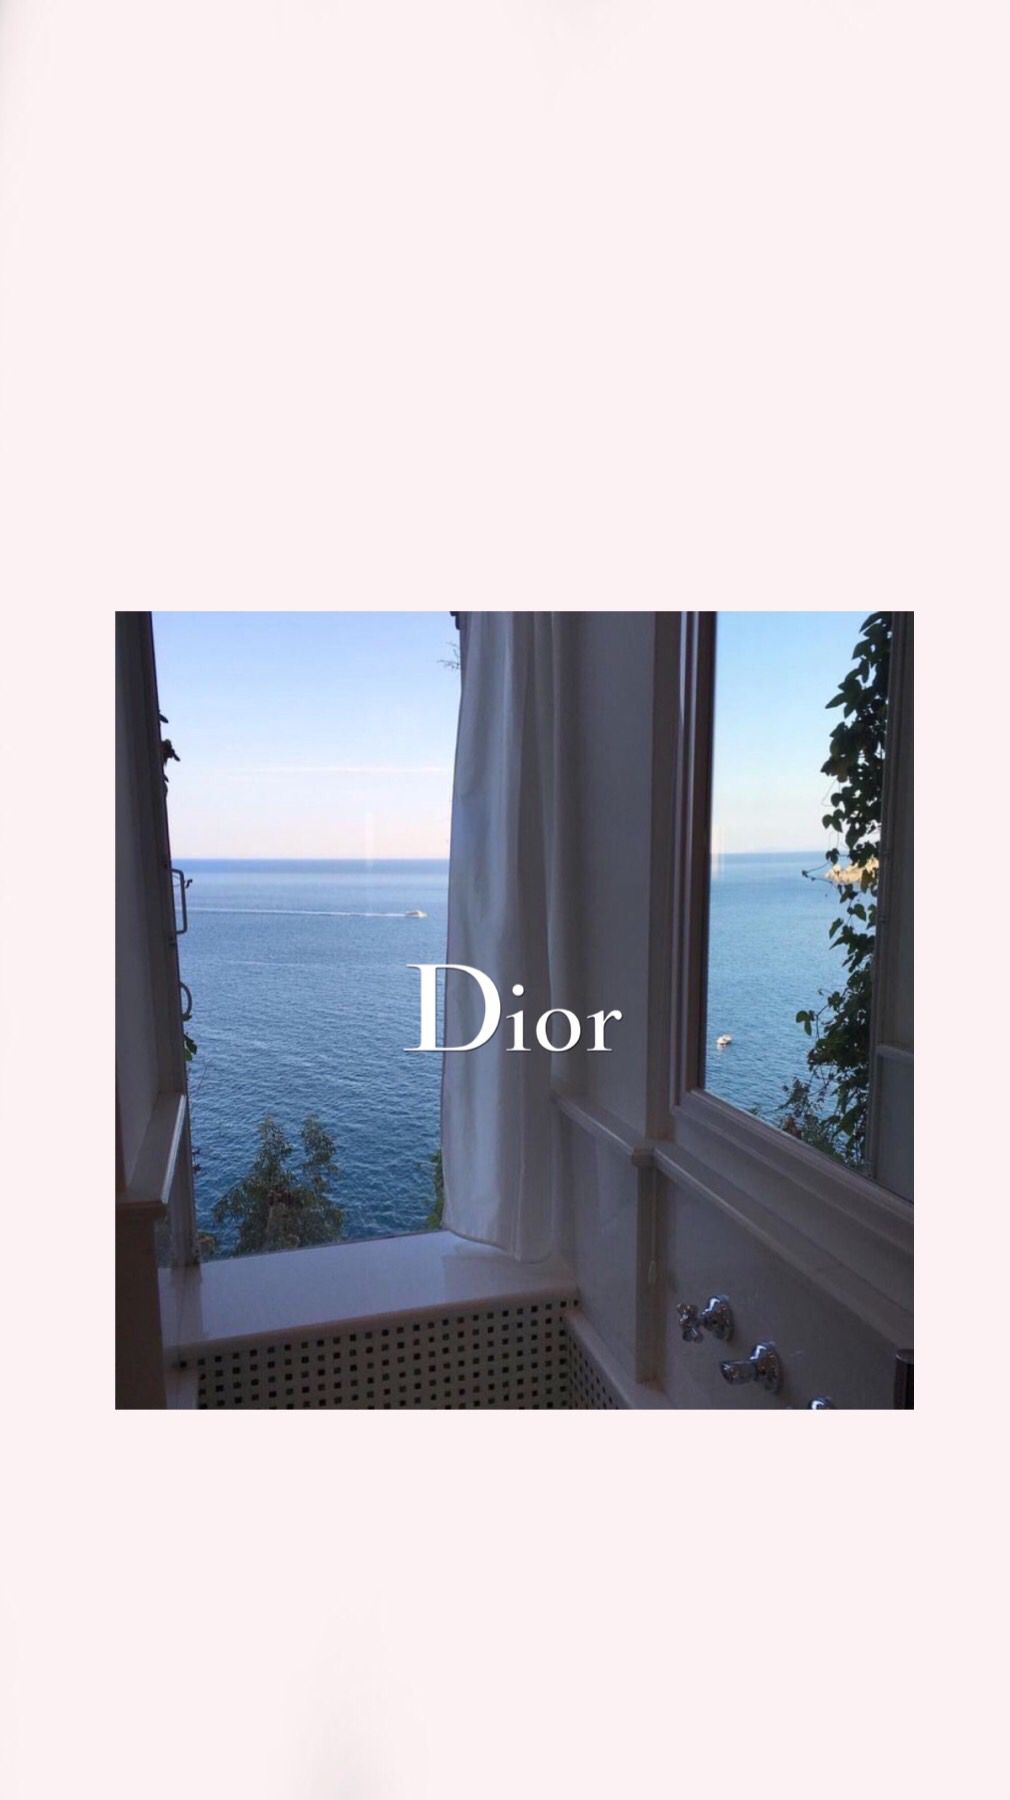 Window Dior Wallpaper. Фоновые изображения, Абстрактные фотографии, Настенные плакаты